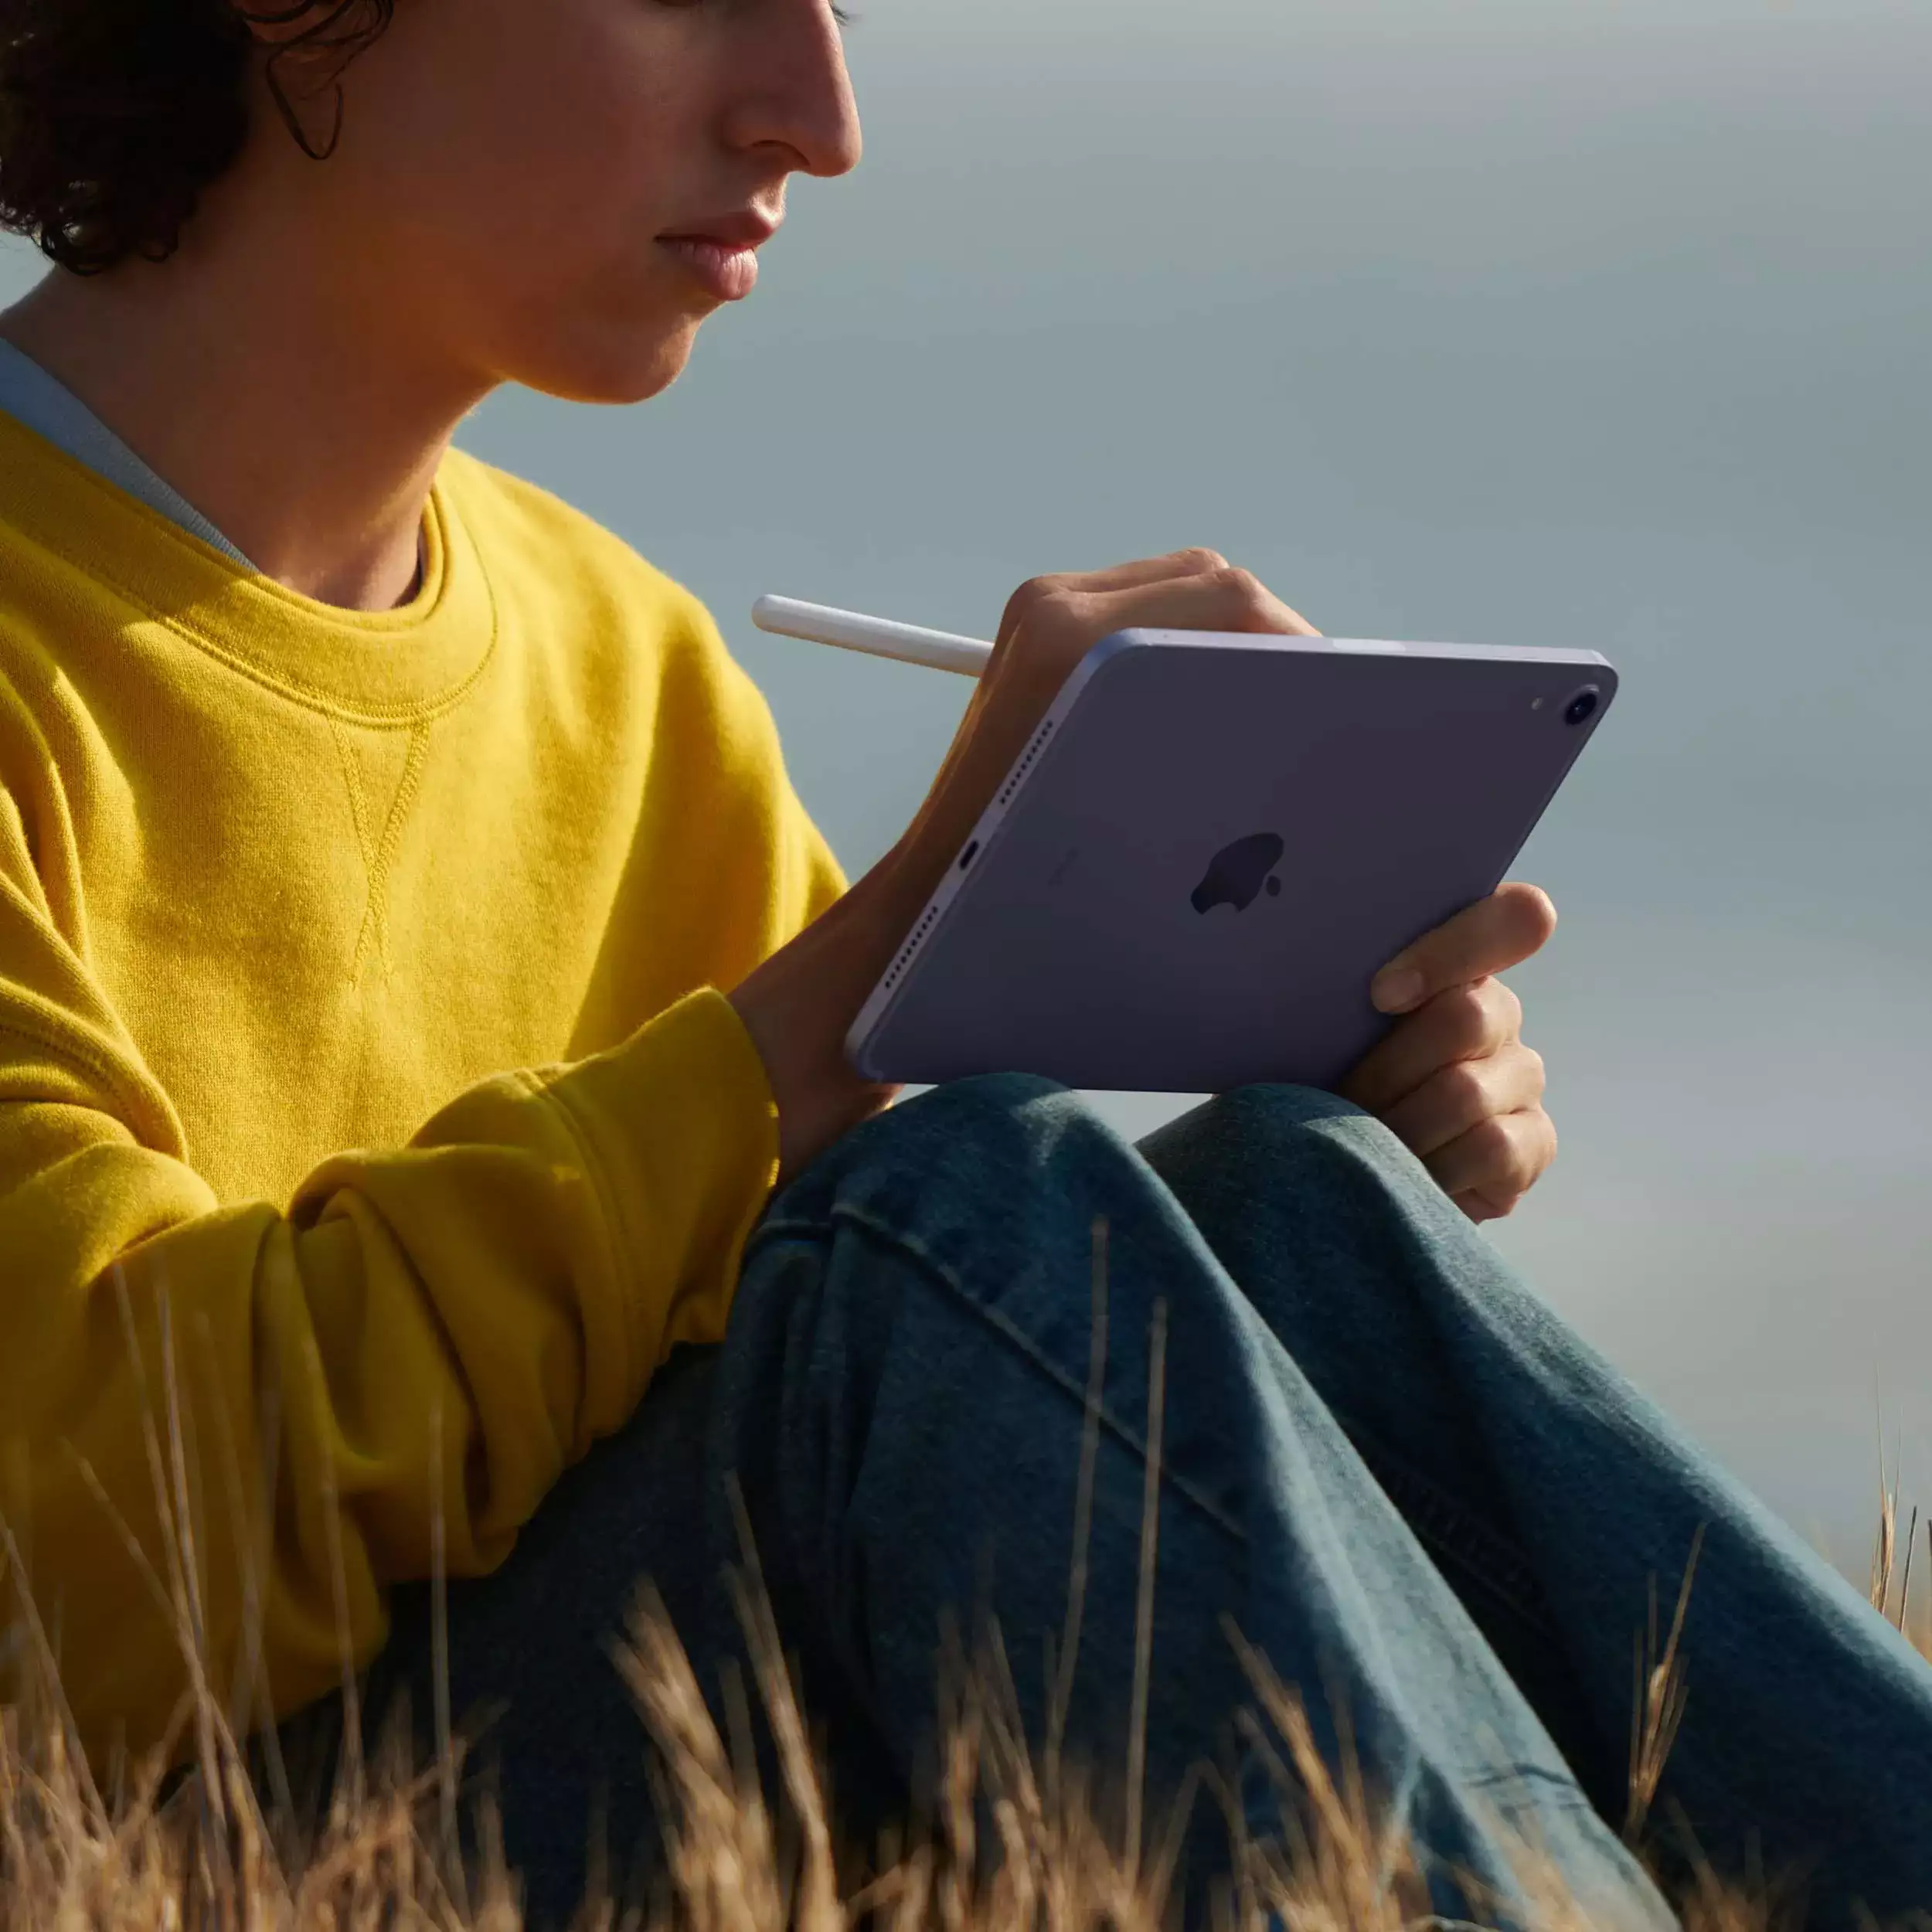 iPad mini 8.3 inç Wi-Fi + Cellular 64GB Uzay Grisi MK893TU/A